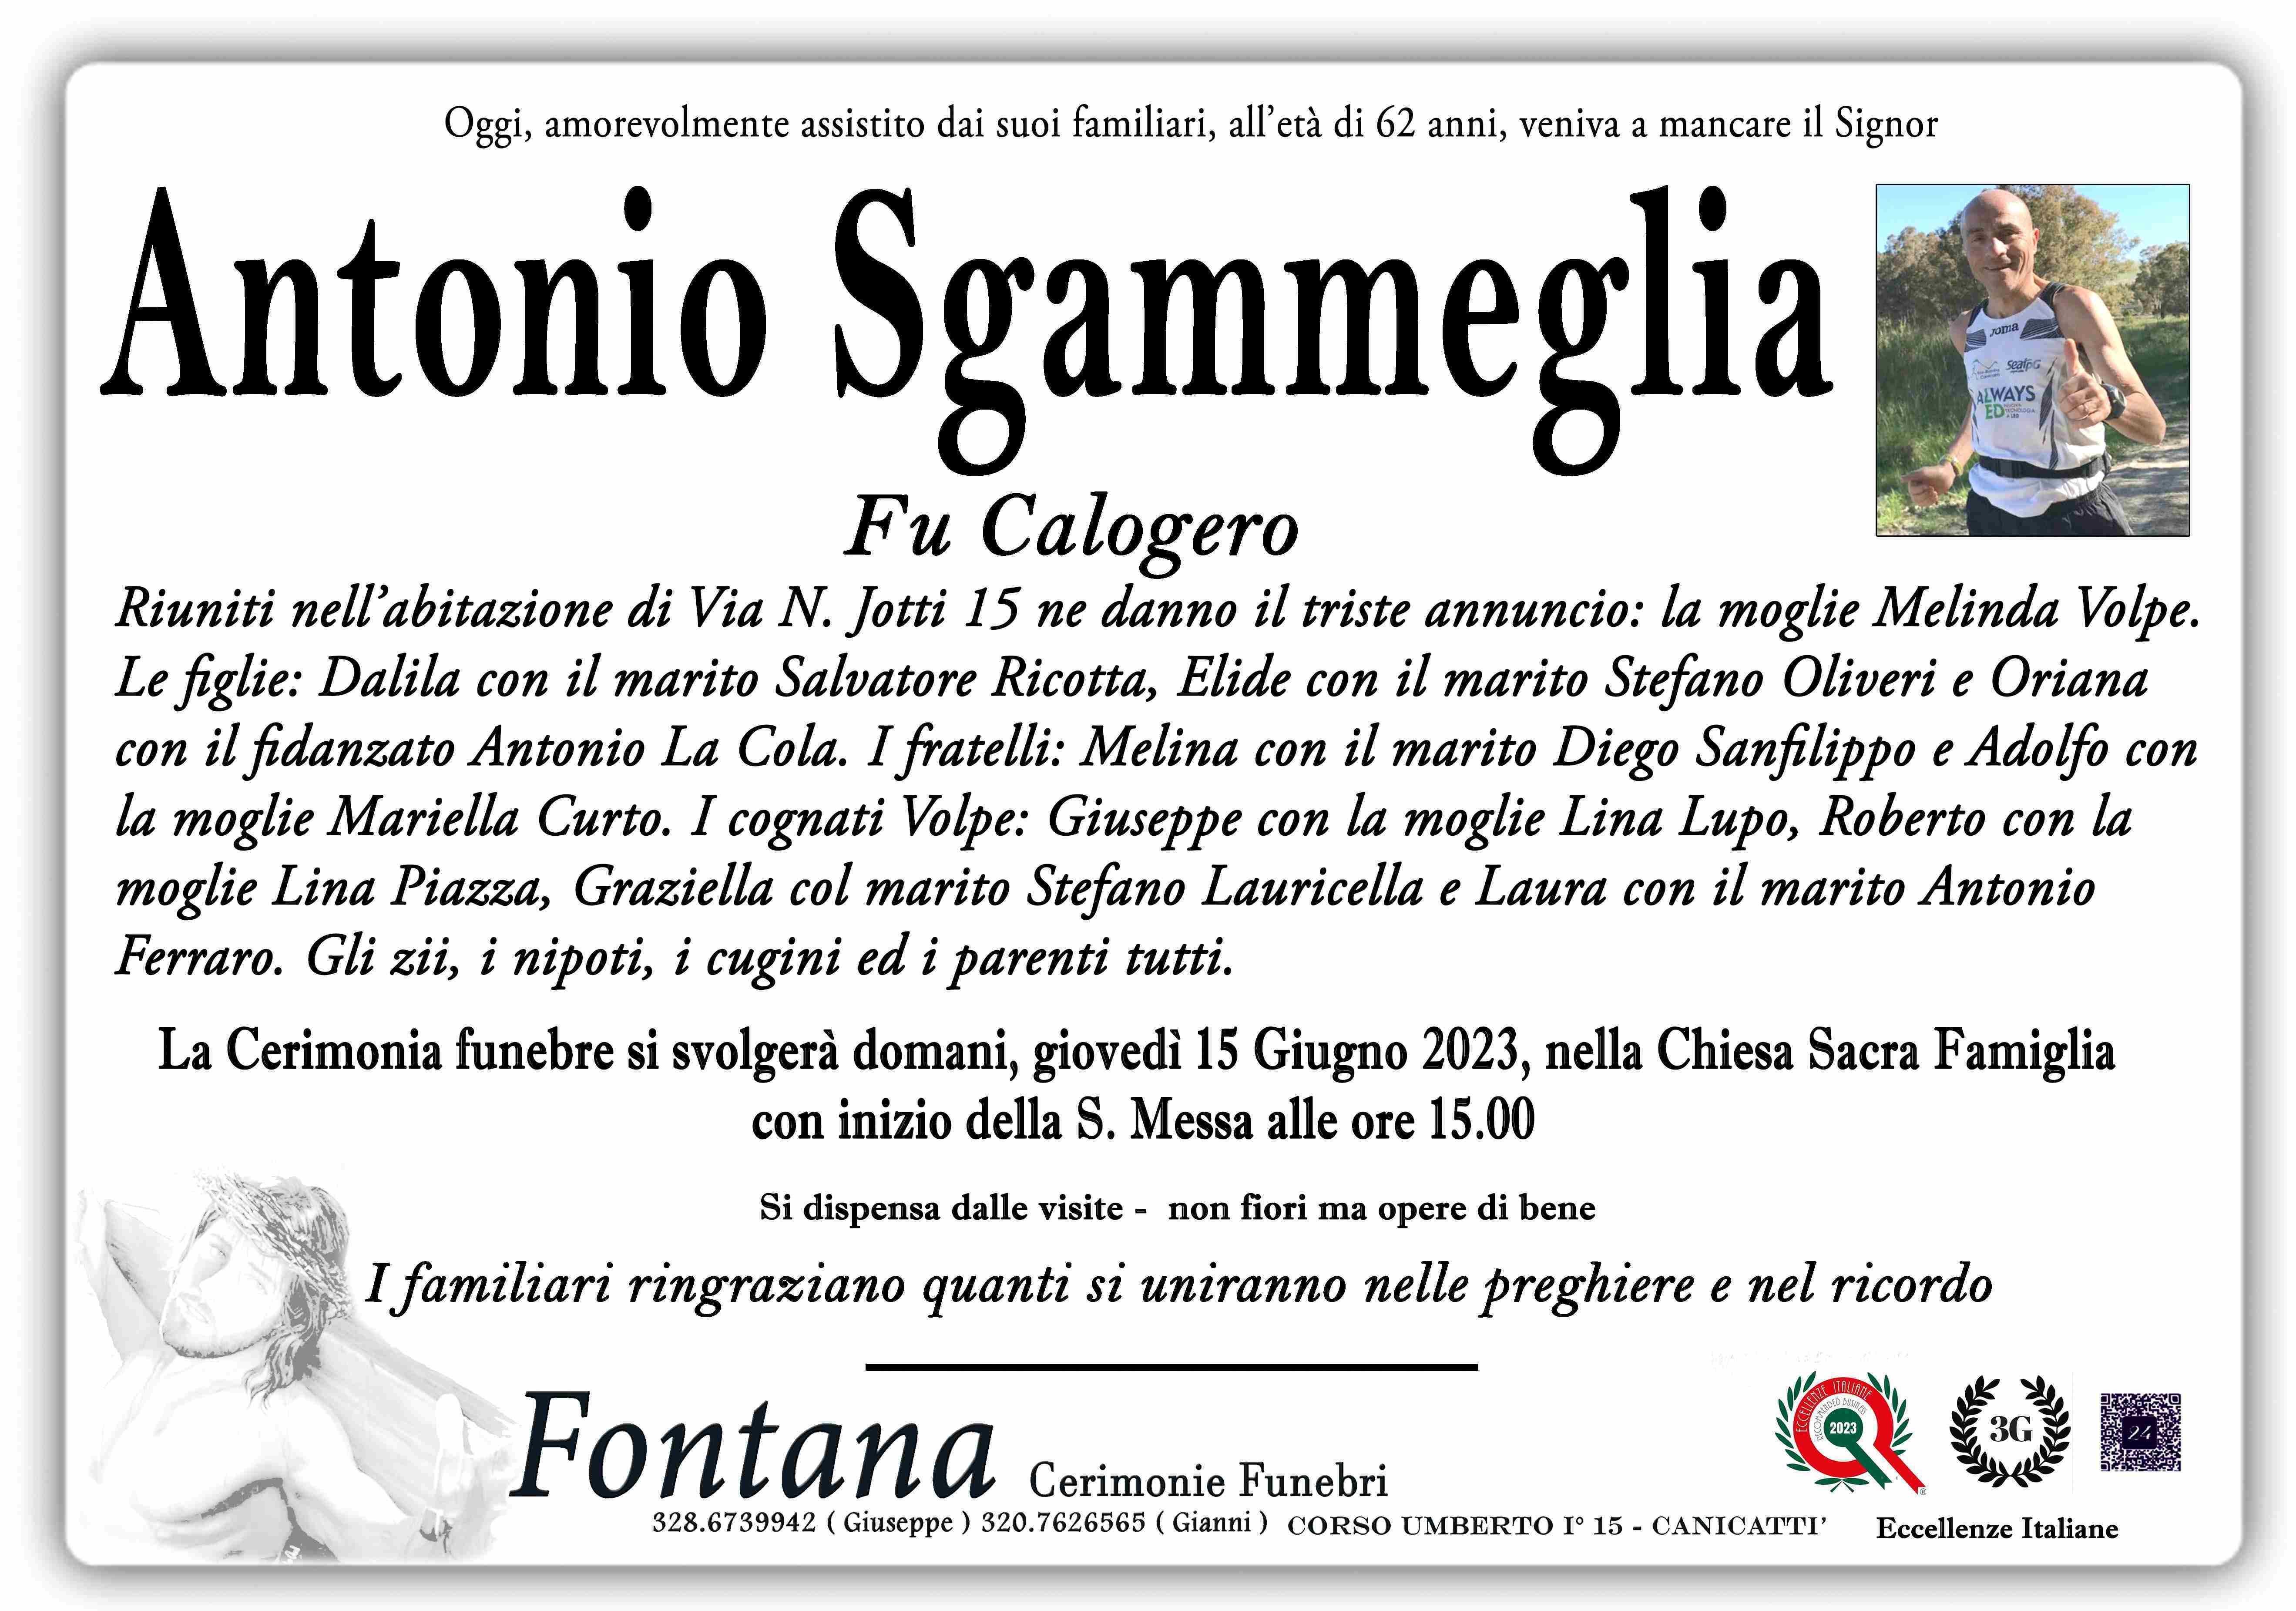 Antonio Sgammeglia